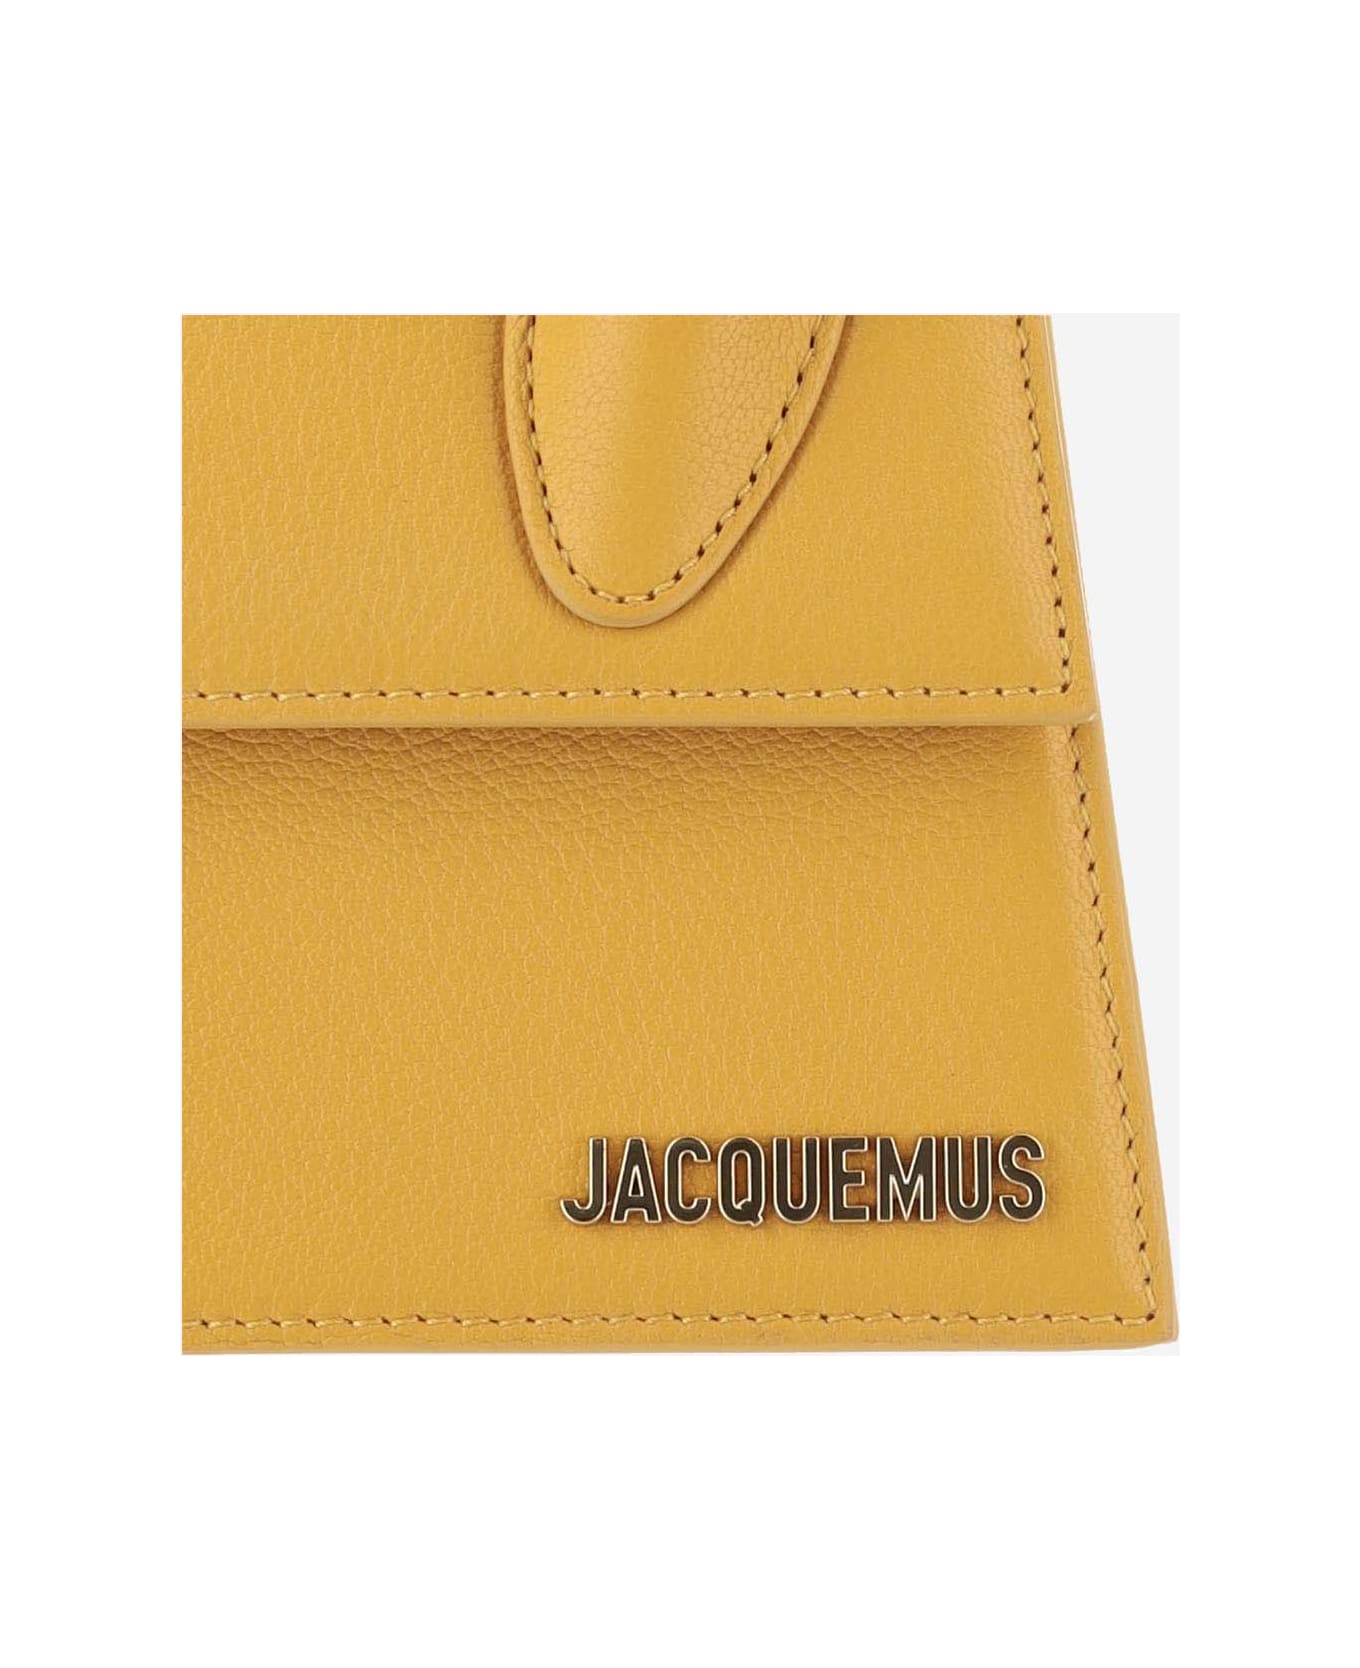 Jacquemus Le Chiquito Moyen Bag - Dark orange